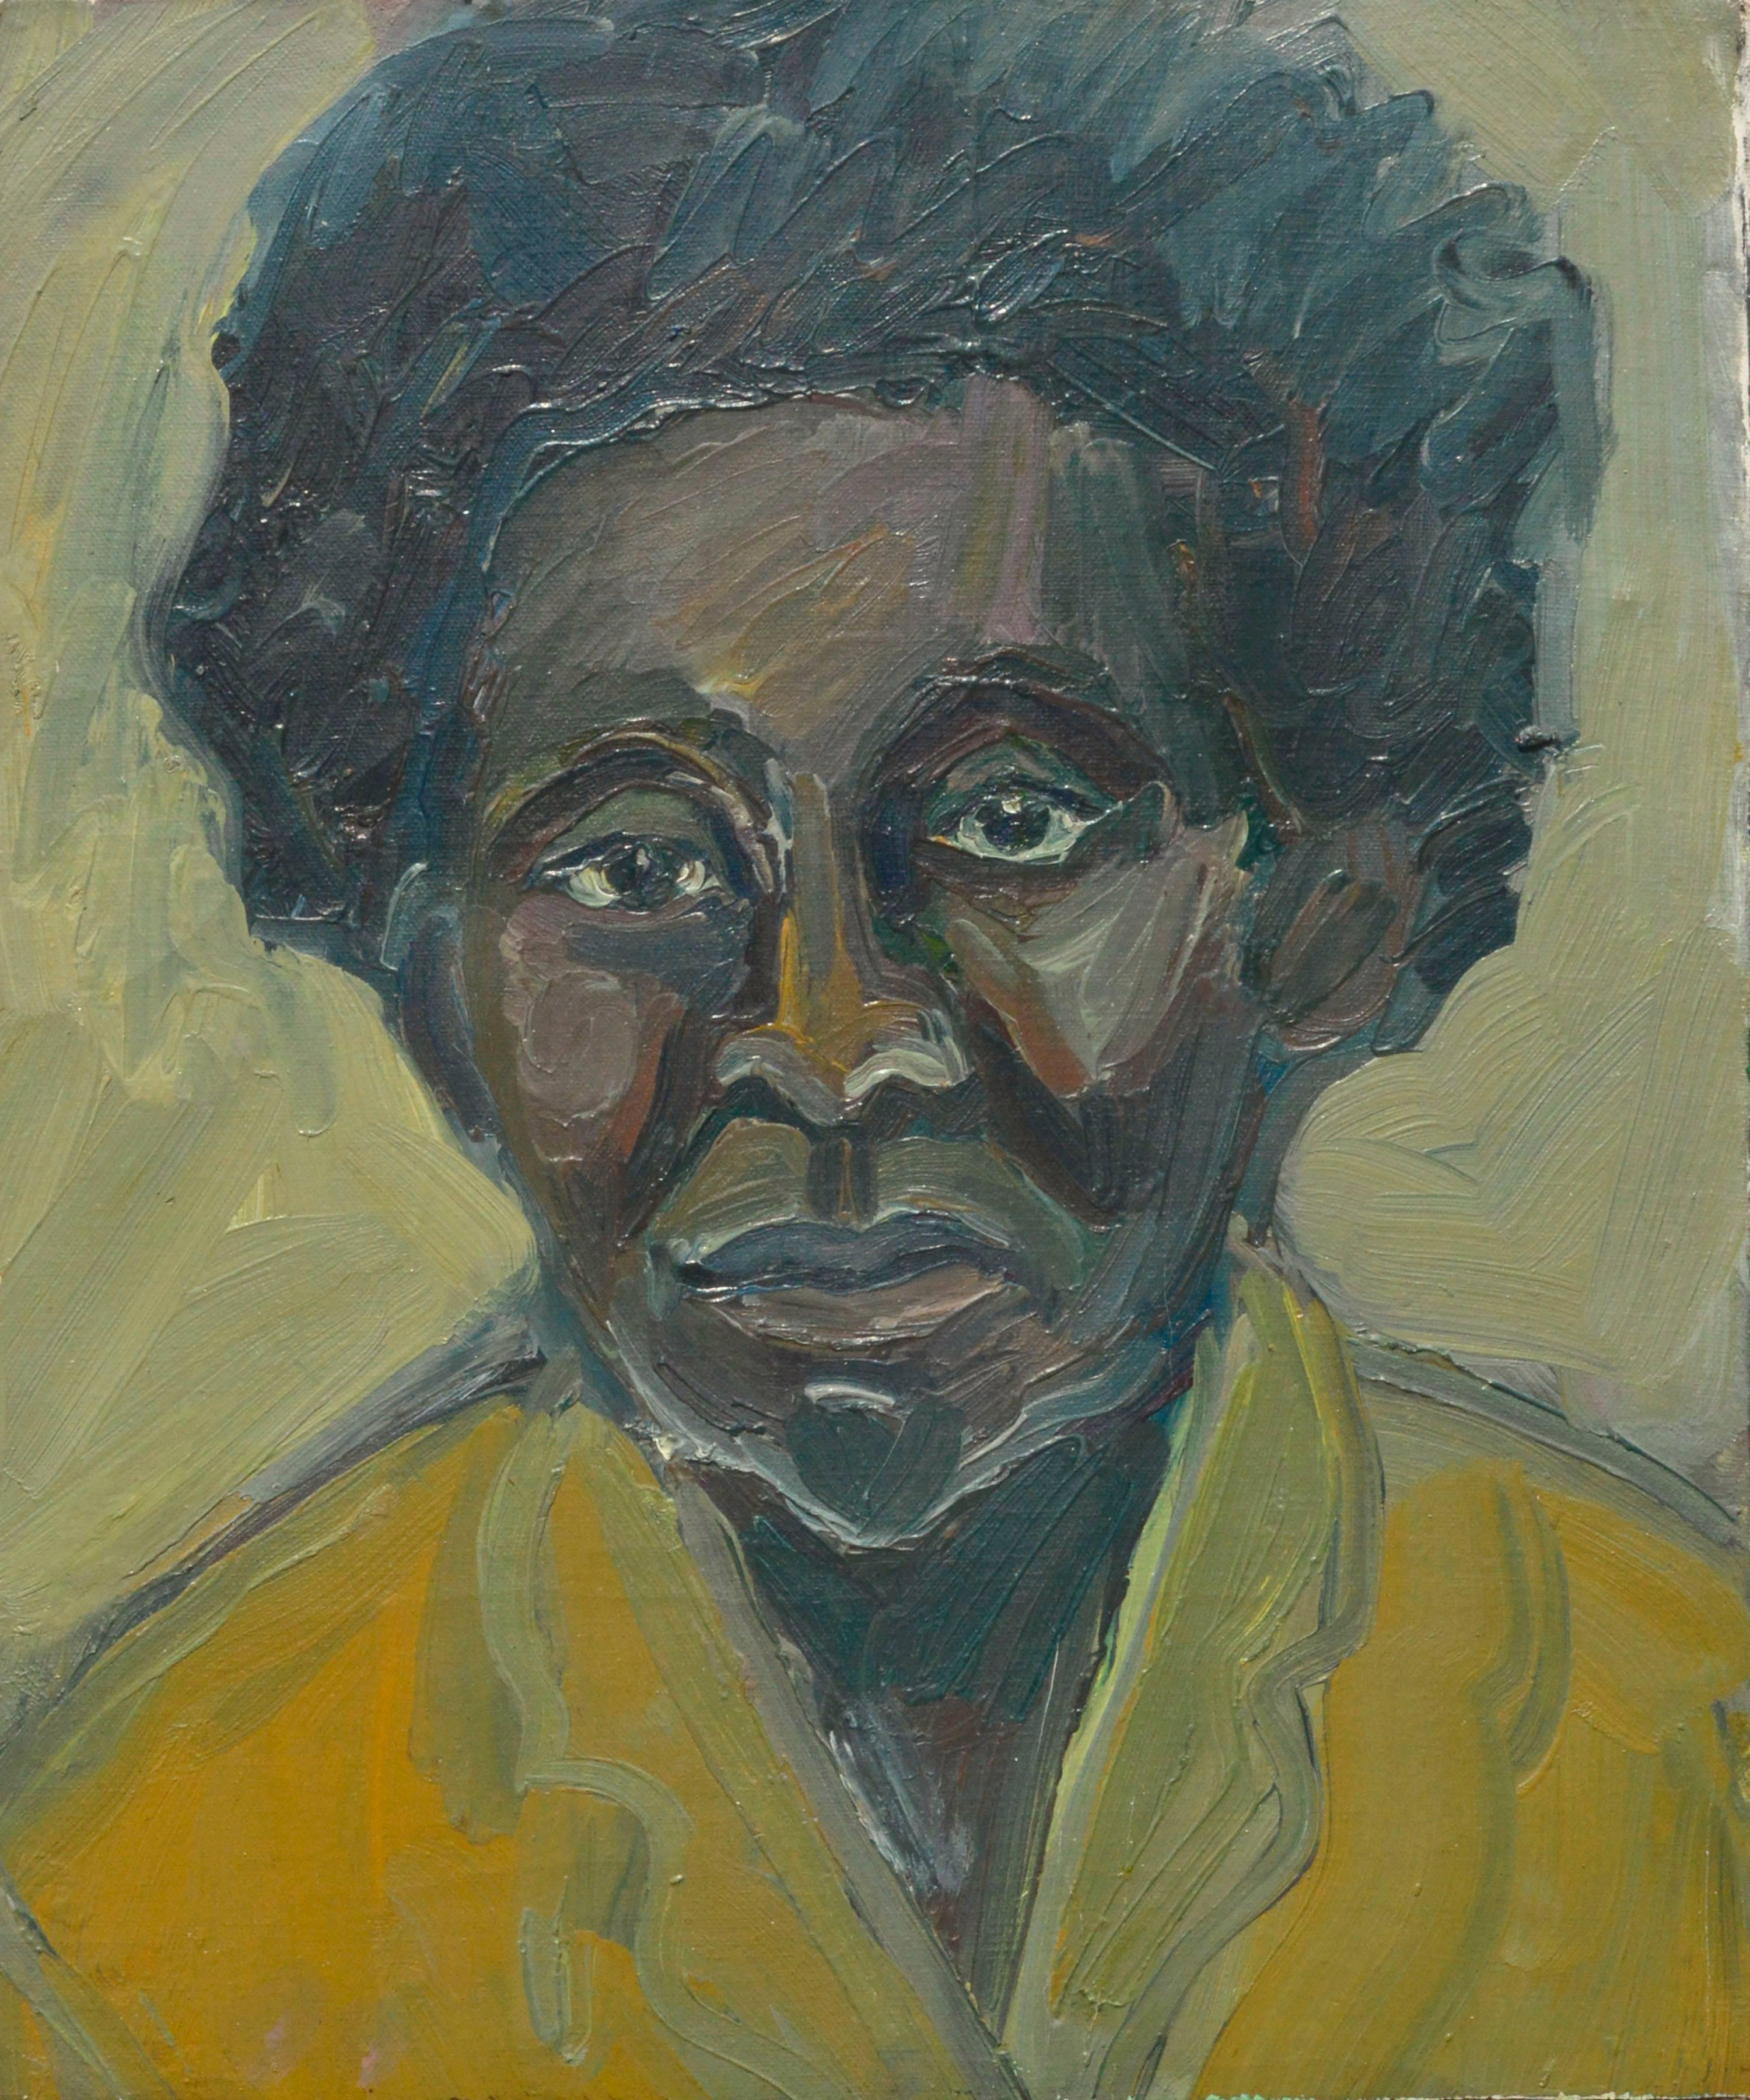 Unknown Portrait Painting - Bay Area Figurative Movement Portrait, C. 1950